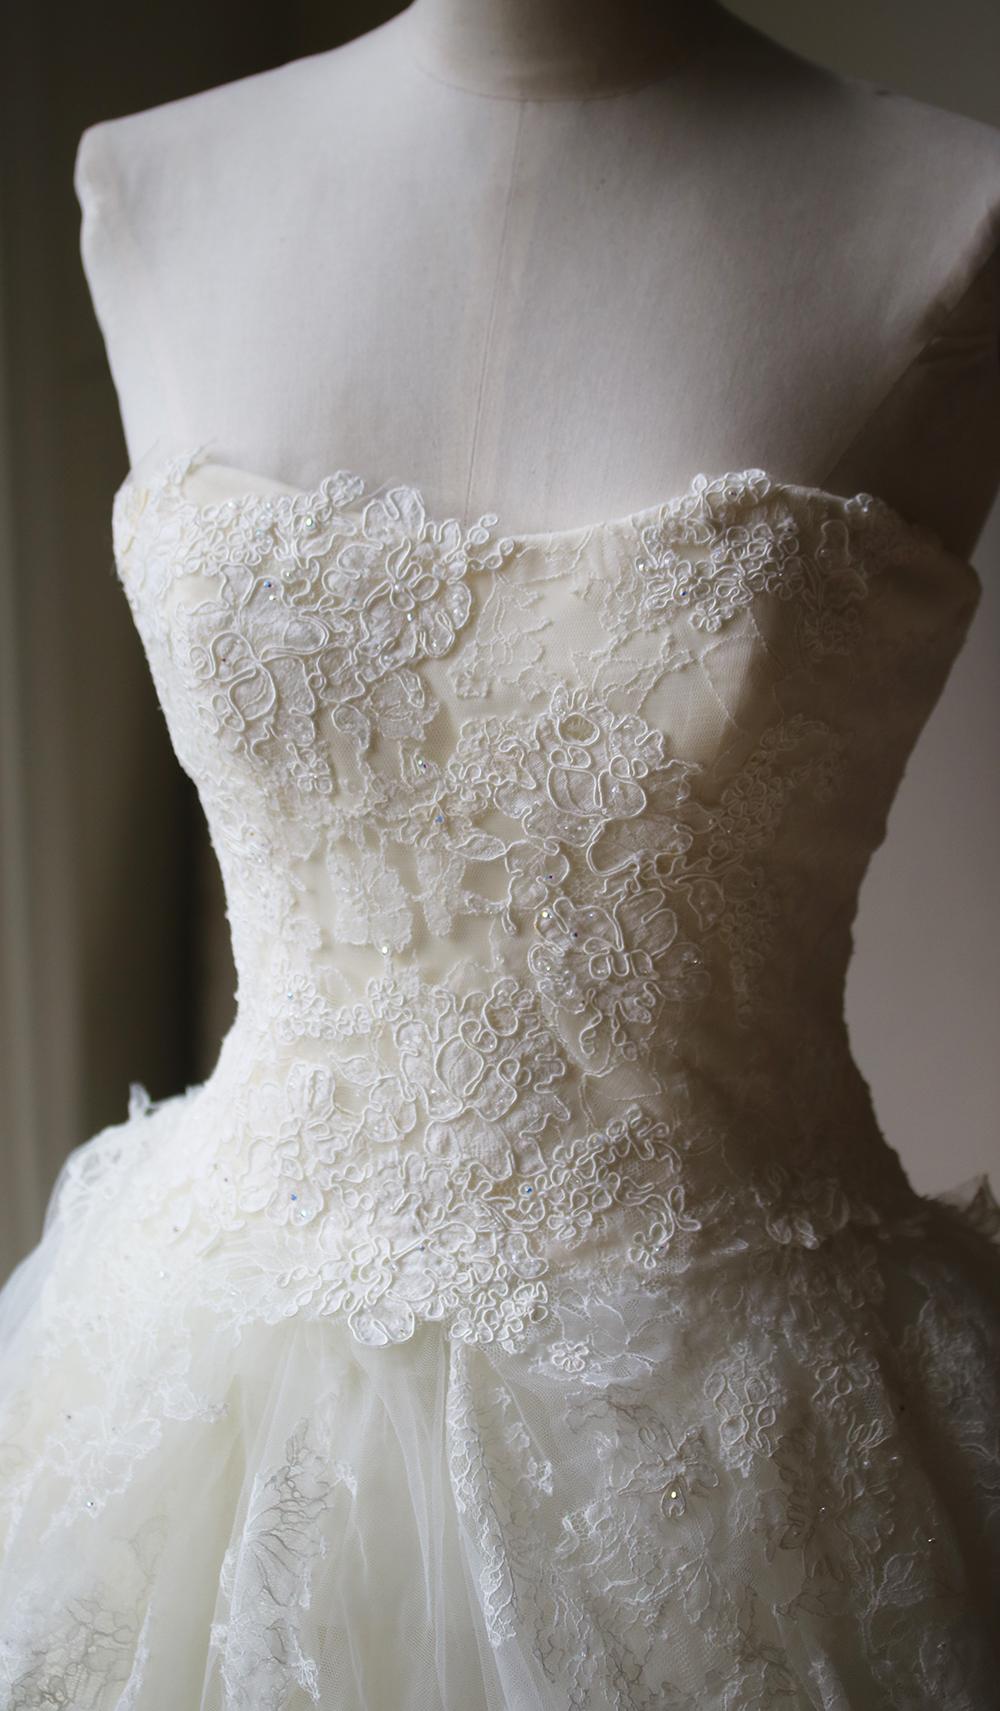 Dieses Vera Wang Luxe Hochzeitskleid ist wirklich eine exquisite Couture-Kreation, die Verarbeitung ist wunderschön! Zartes, trägerloses, verschönertes, entbeintes Mieder mit Reißverschluss. Verziertes Seidenorganzaband im Rückenbereich. Schaumiger,